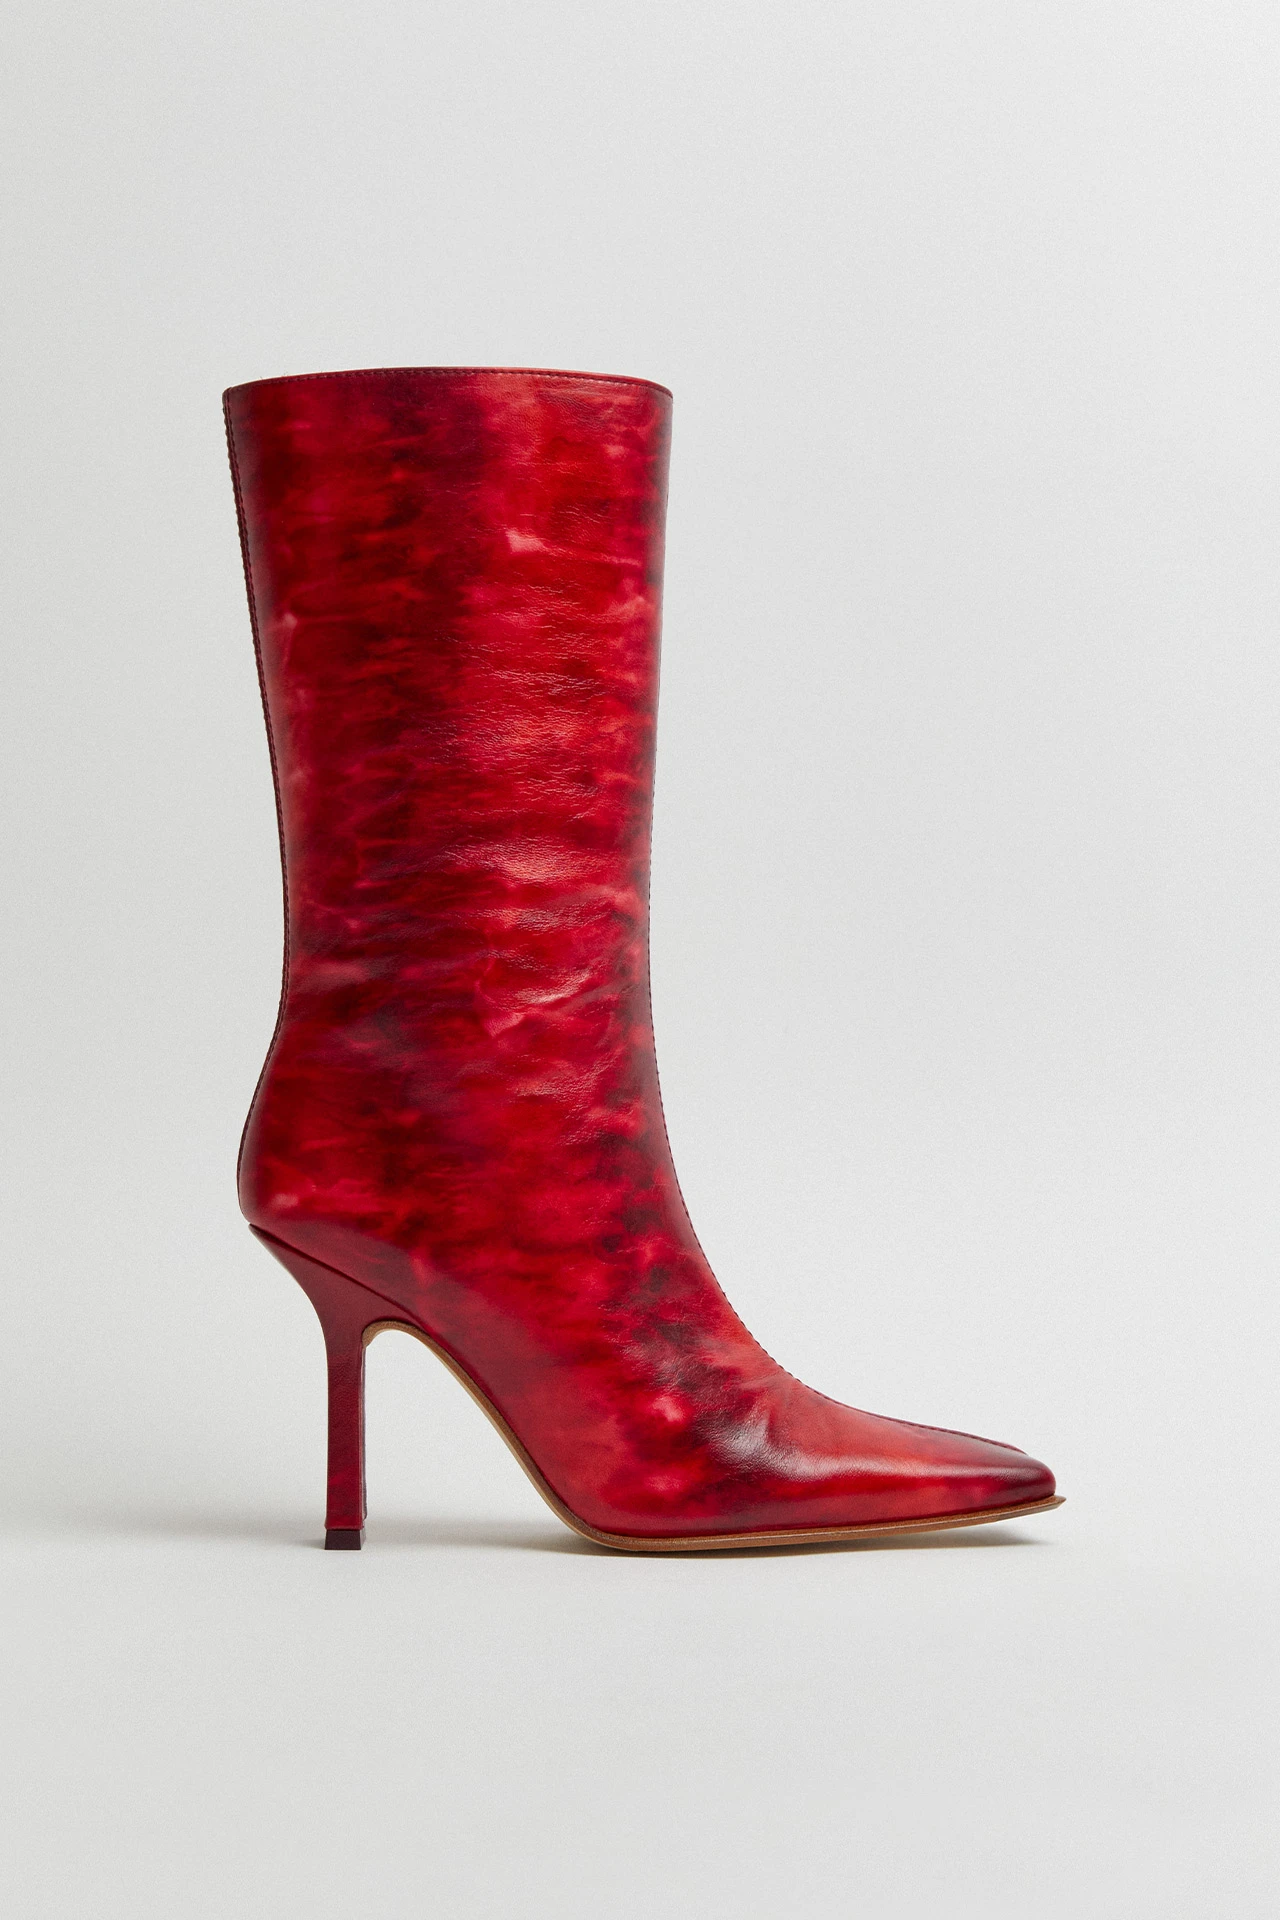 Miista-noor-red-boots-01